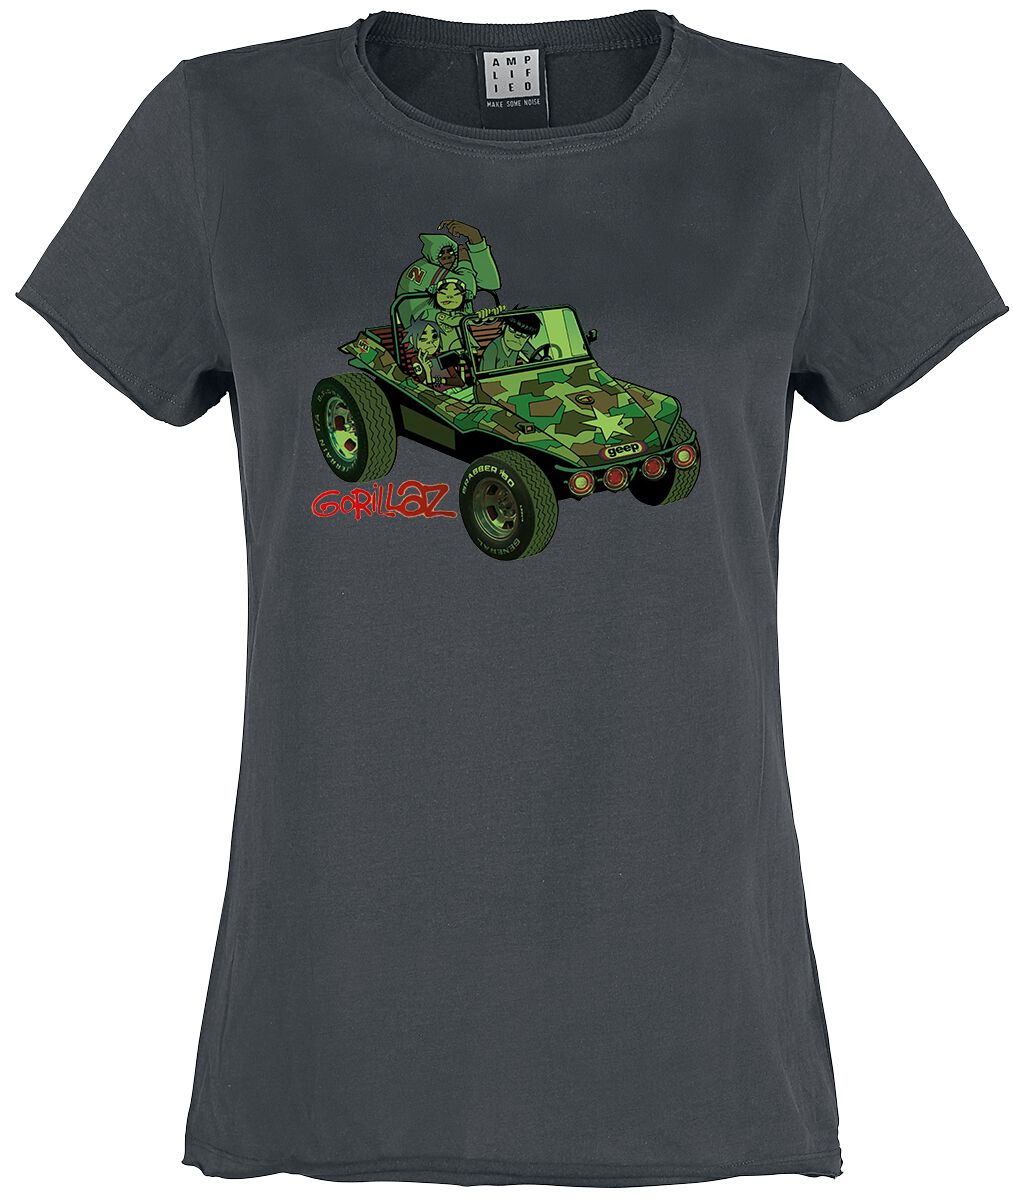 Gorillaz T-Shirt - Amplified Collection - Geep - S bis XL - für Damen - Größe S - charcoal  - Lizenziertes Merchandise!